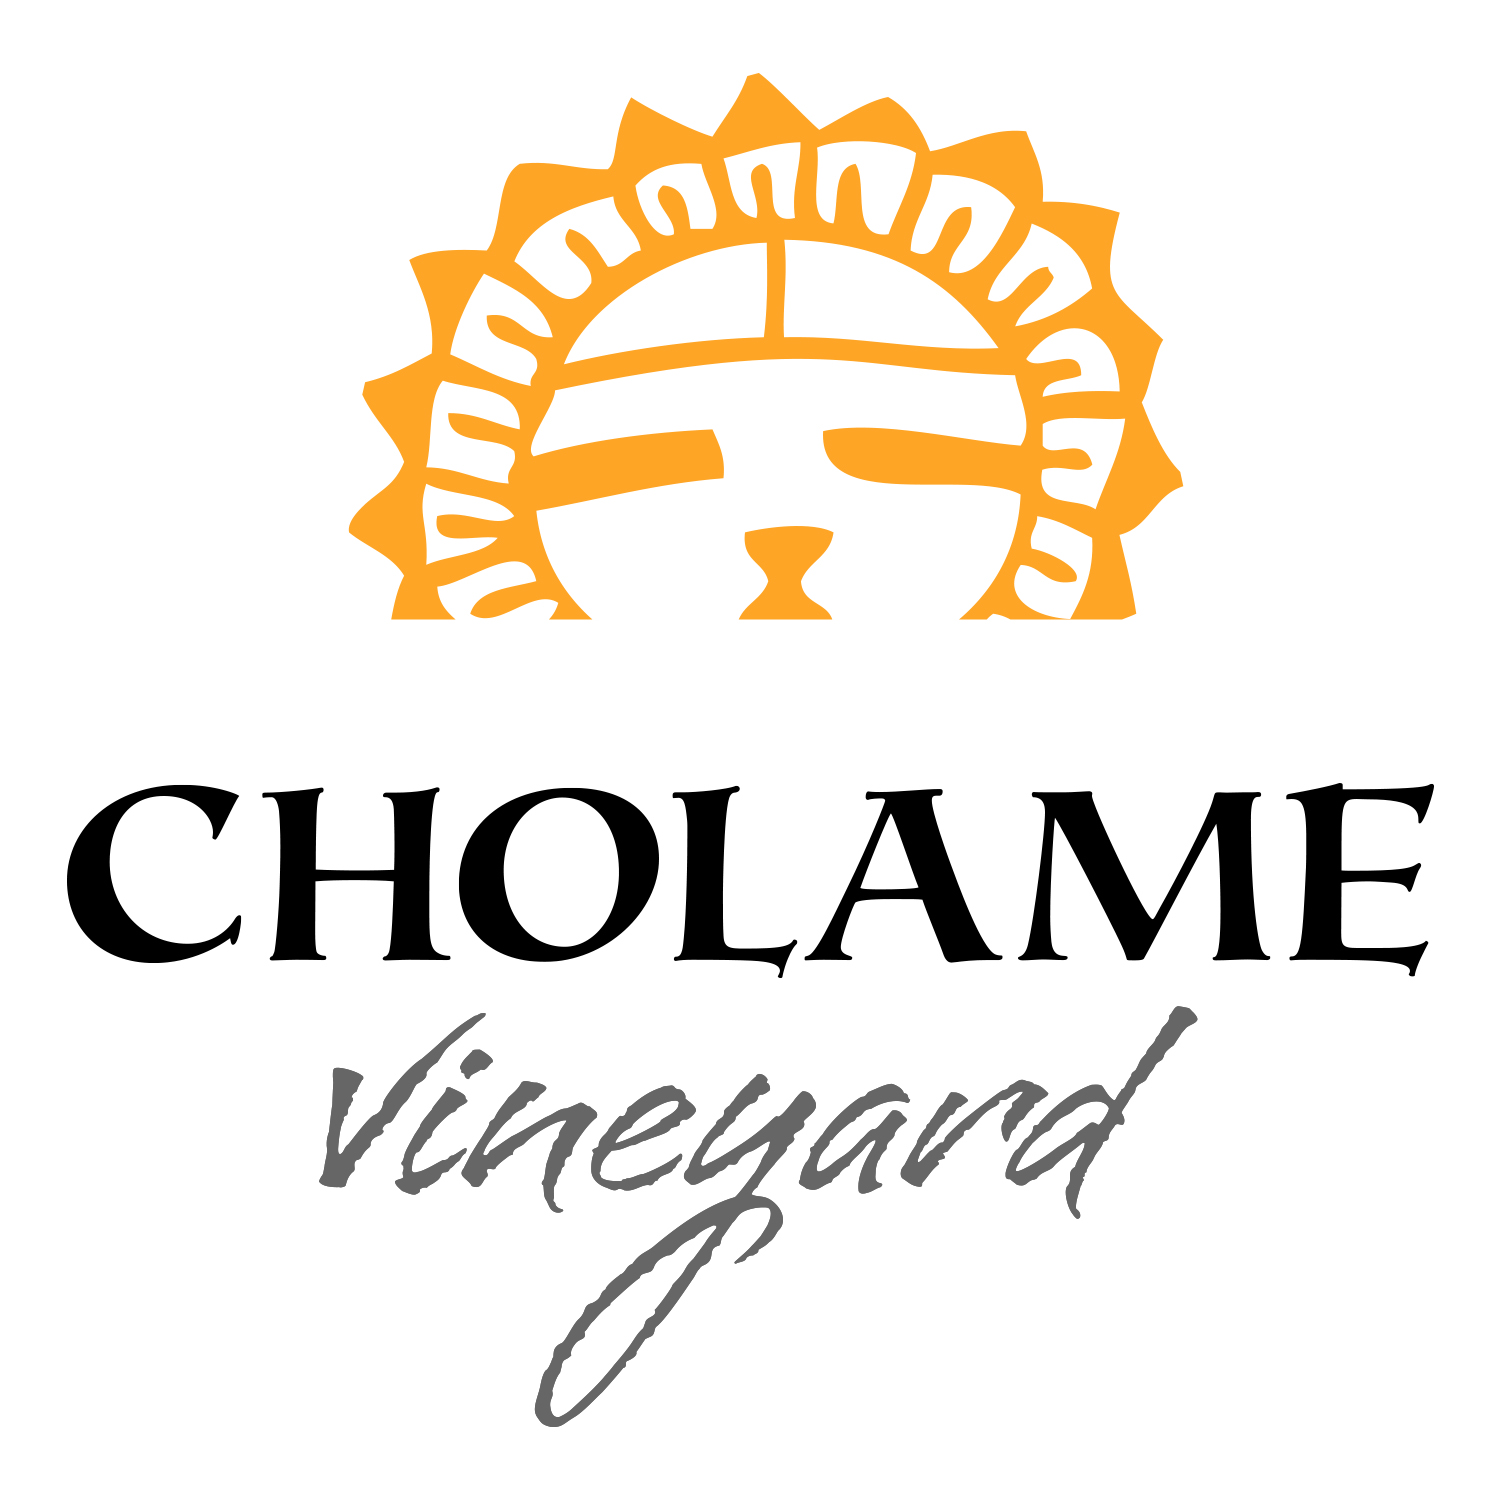 Cholame Vineyard